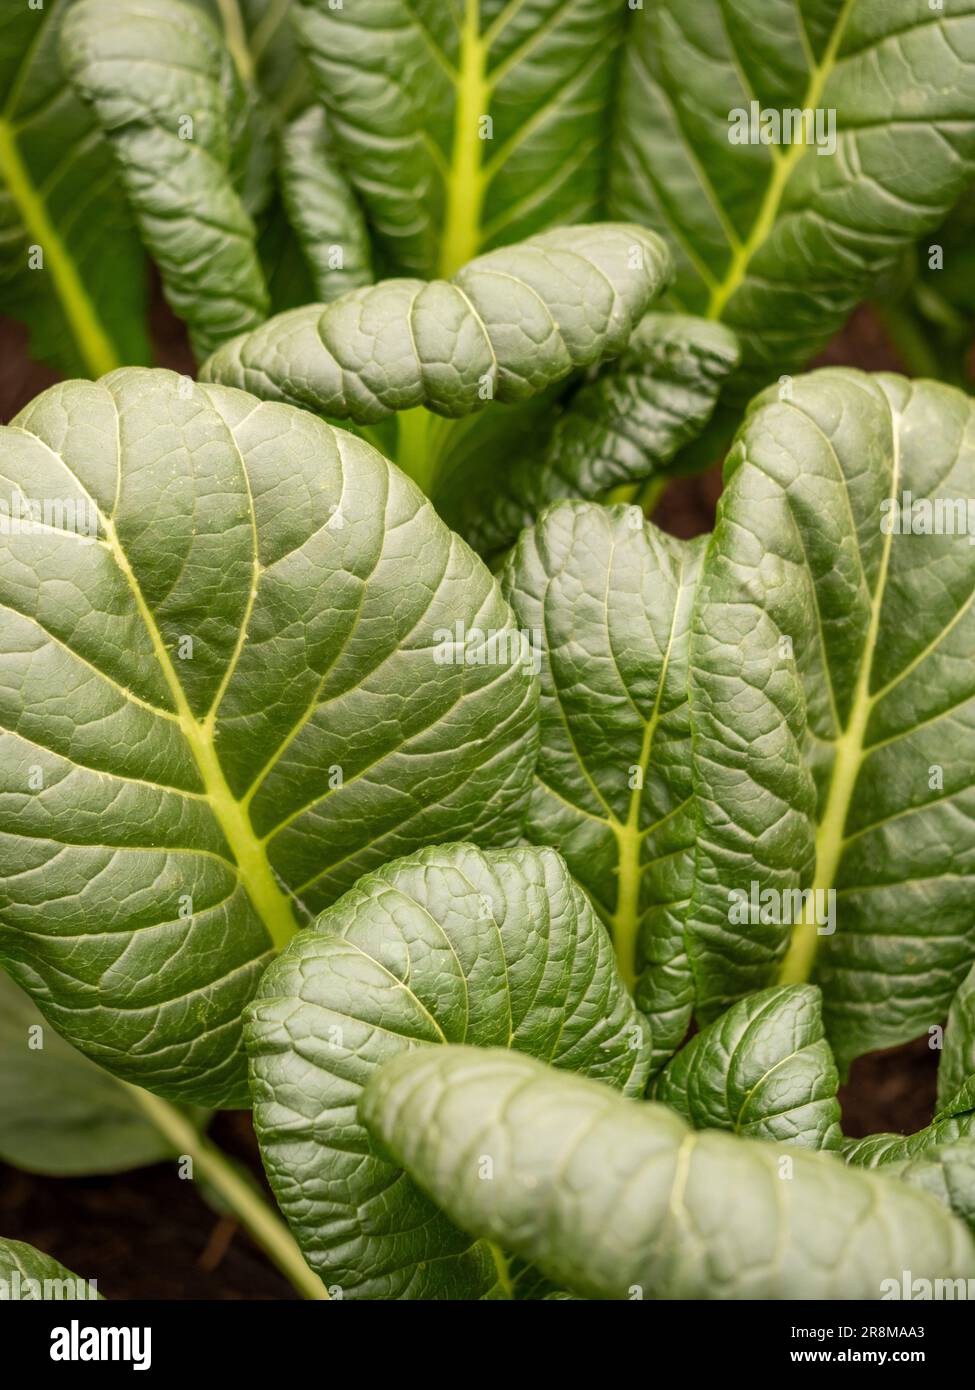 Nahaufnahme der dunkelgrünen, strukturierten Blätter des japanischen Spinats Hohei, die in einem britischen Garten wachsen. Stockfoto